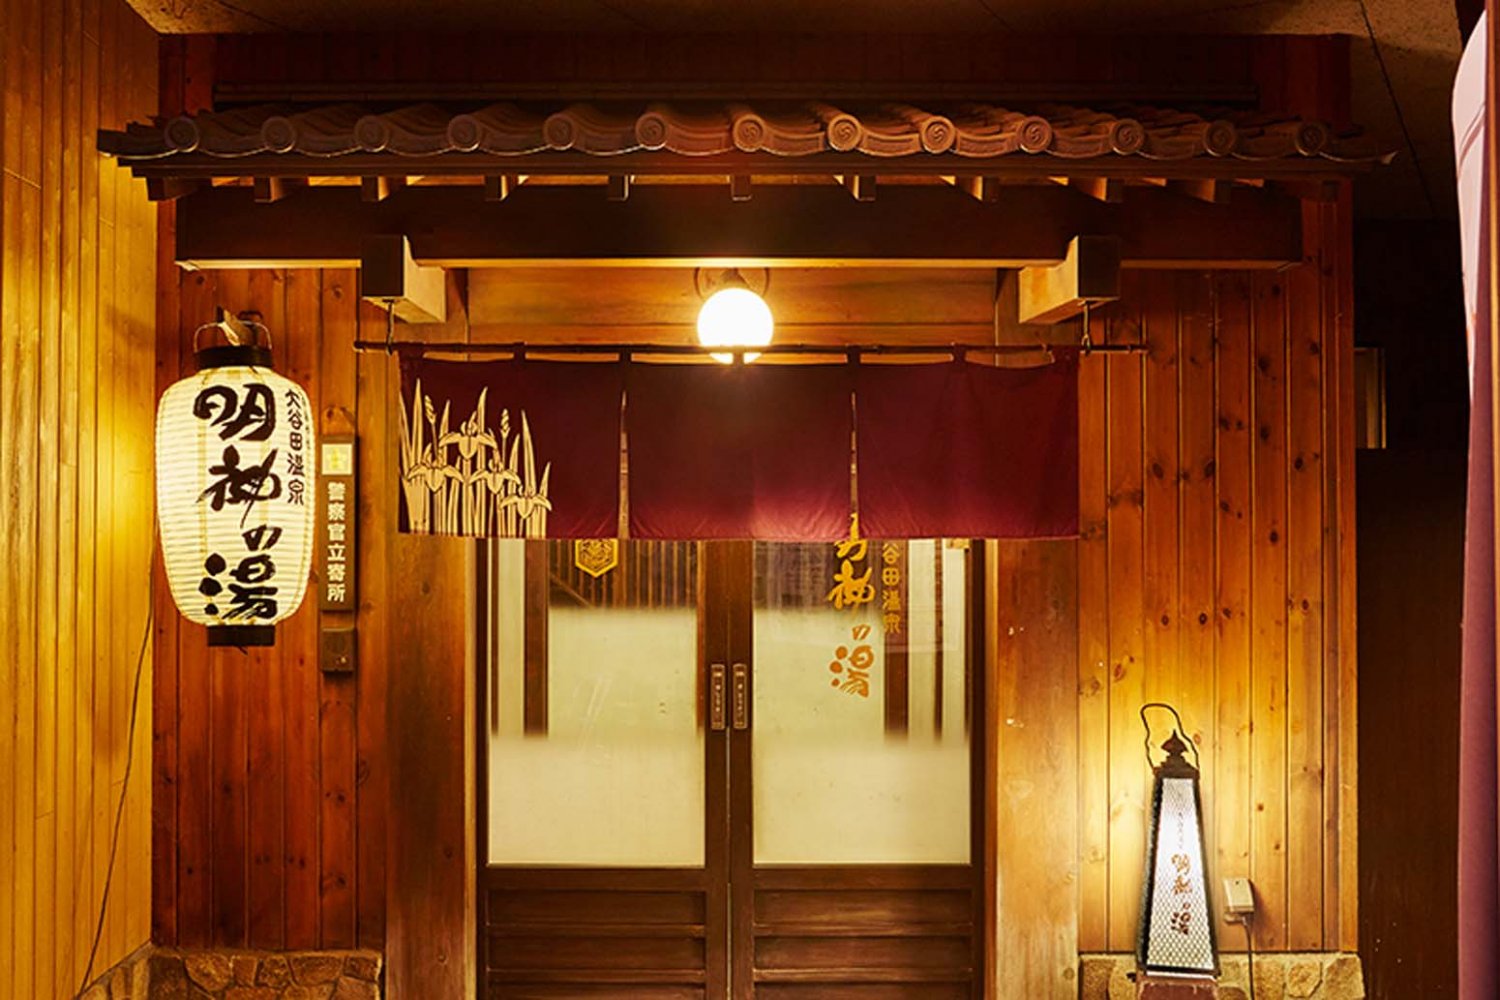 和の風情を漂わせる玄関は旅館のような趣。館内にも日本情緒を演出している。